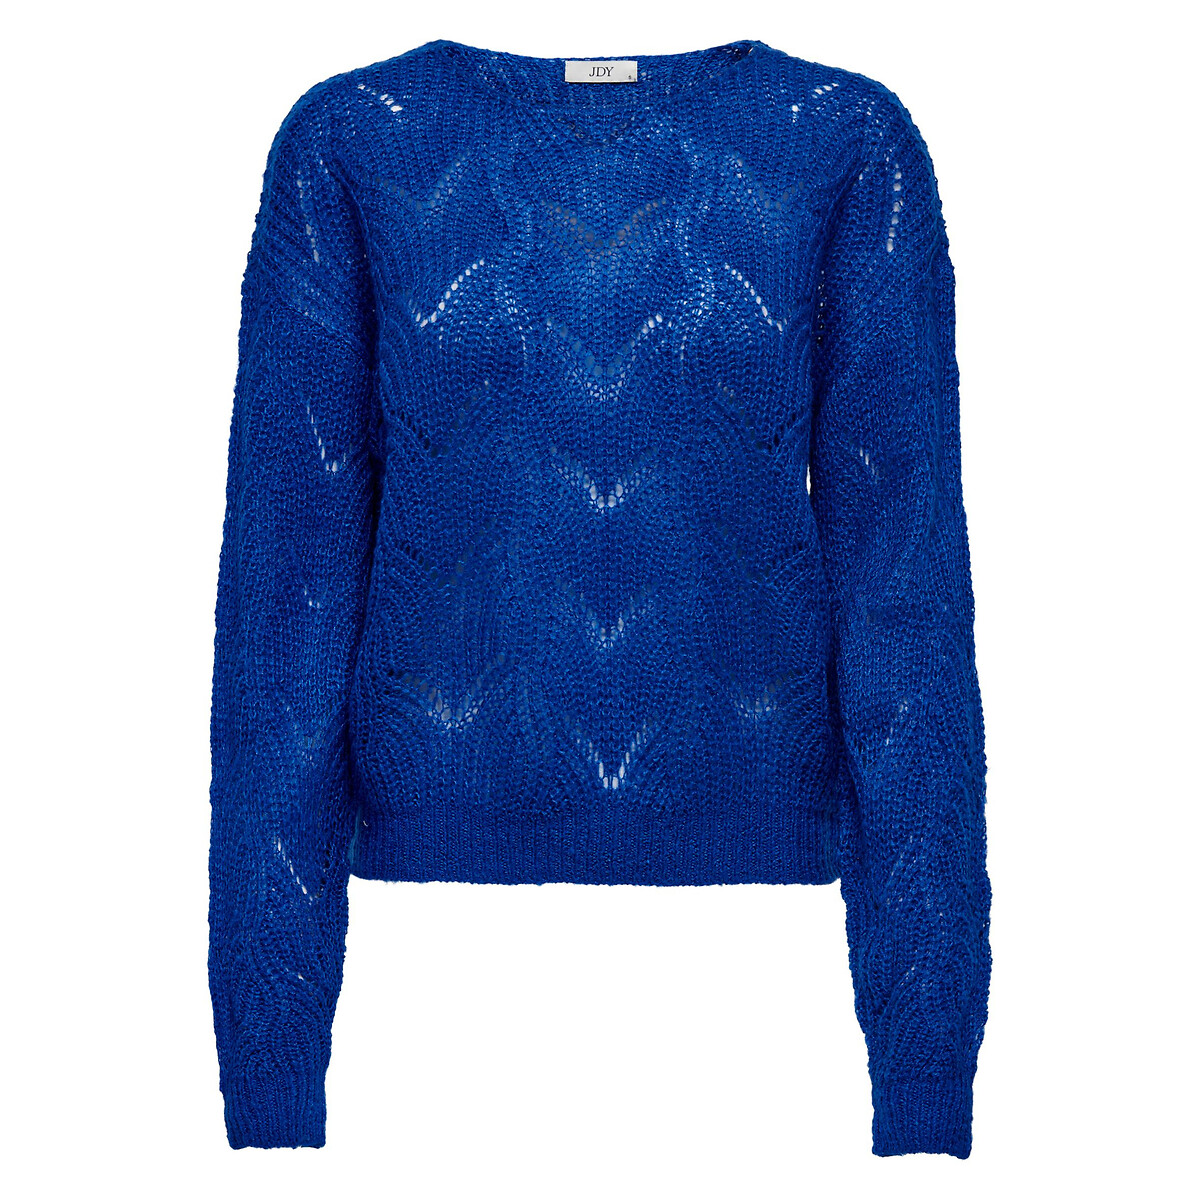 Пуловер С круглым вырезом из ажурного трикотажа S синий LaRedoute, размер S - фото 5